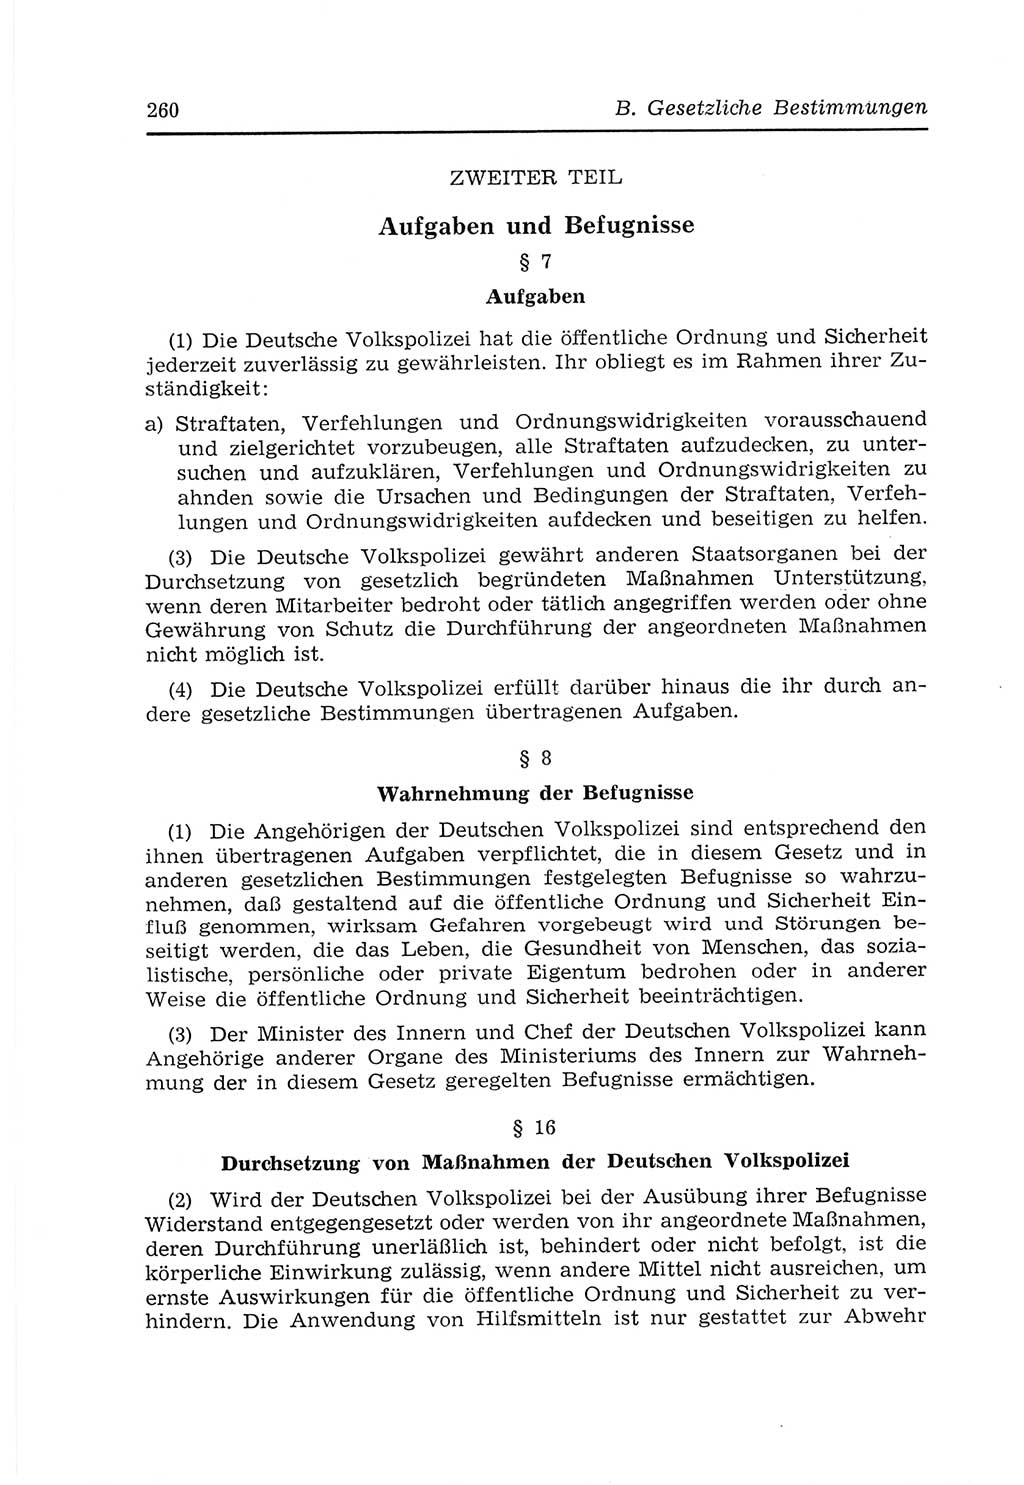 Strafvollzugs- und Wiedereingliederungsgesetz (SVWG) der Deutschen Demokratischen Republik (DDR) 1968, Seite 260 (SVWG DDR 1968, S. 260)